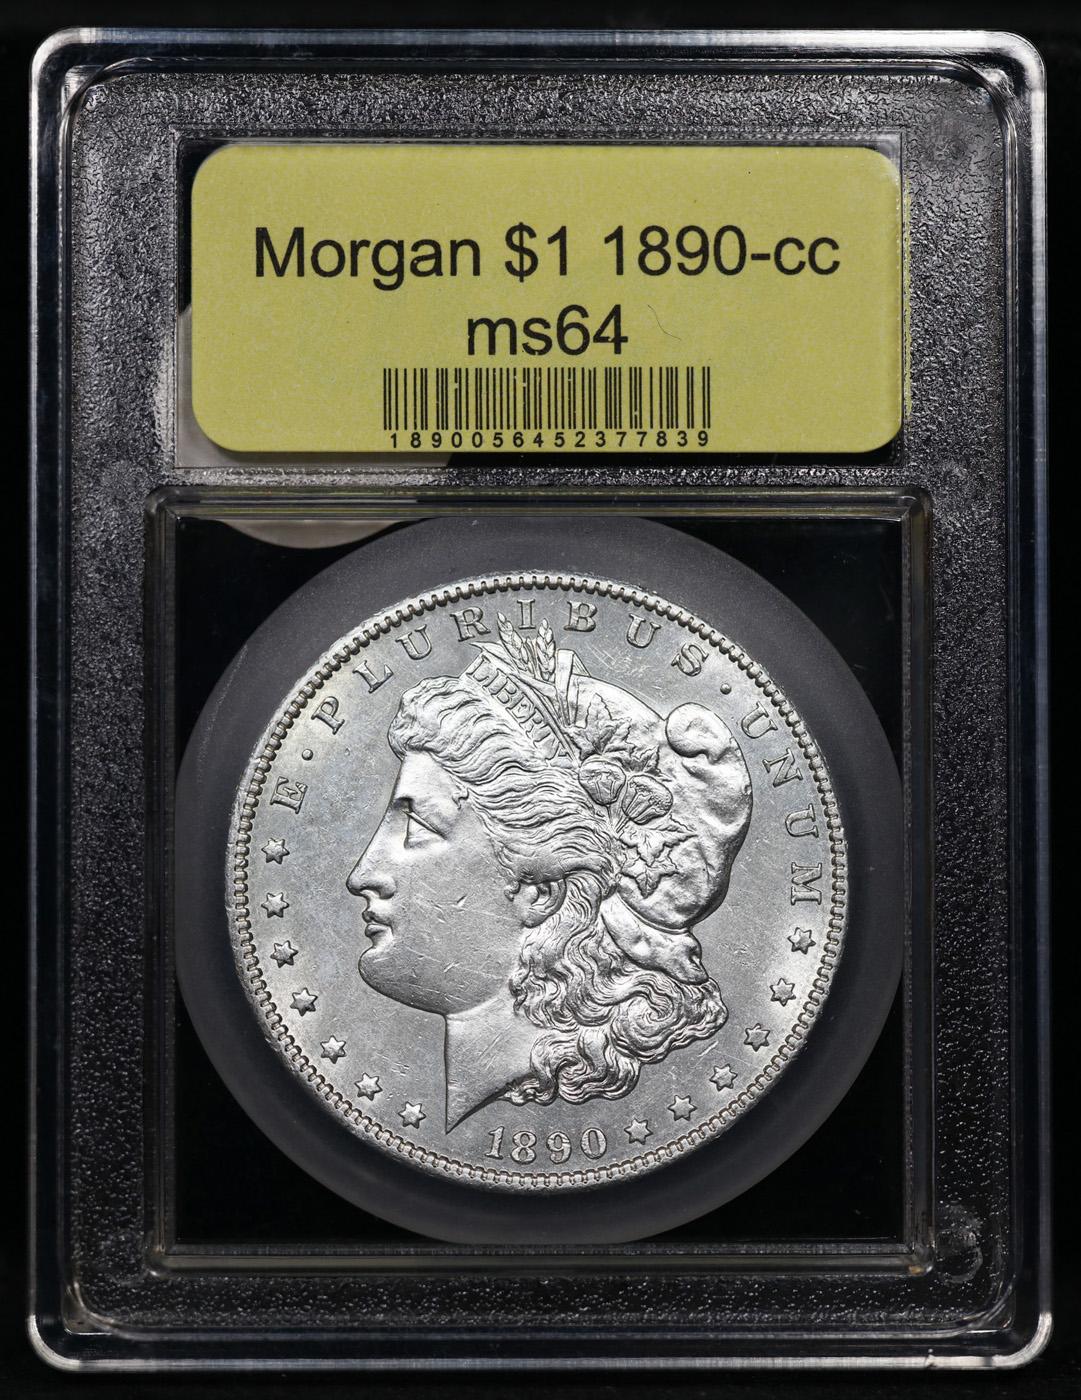 ***Auction Highlight*** 1890-cc Morgan Dollar $1 Graded Choice Unc By USCG (fc)